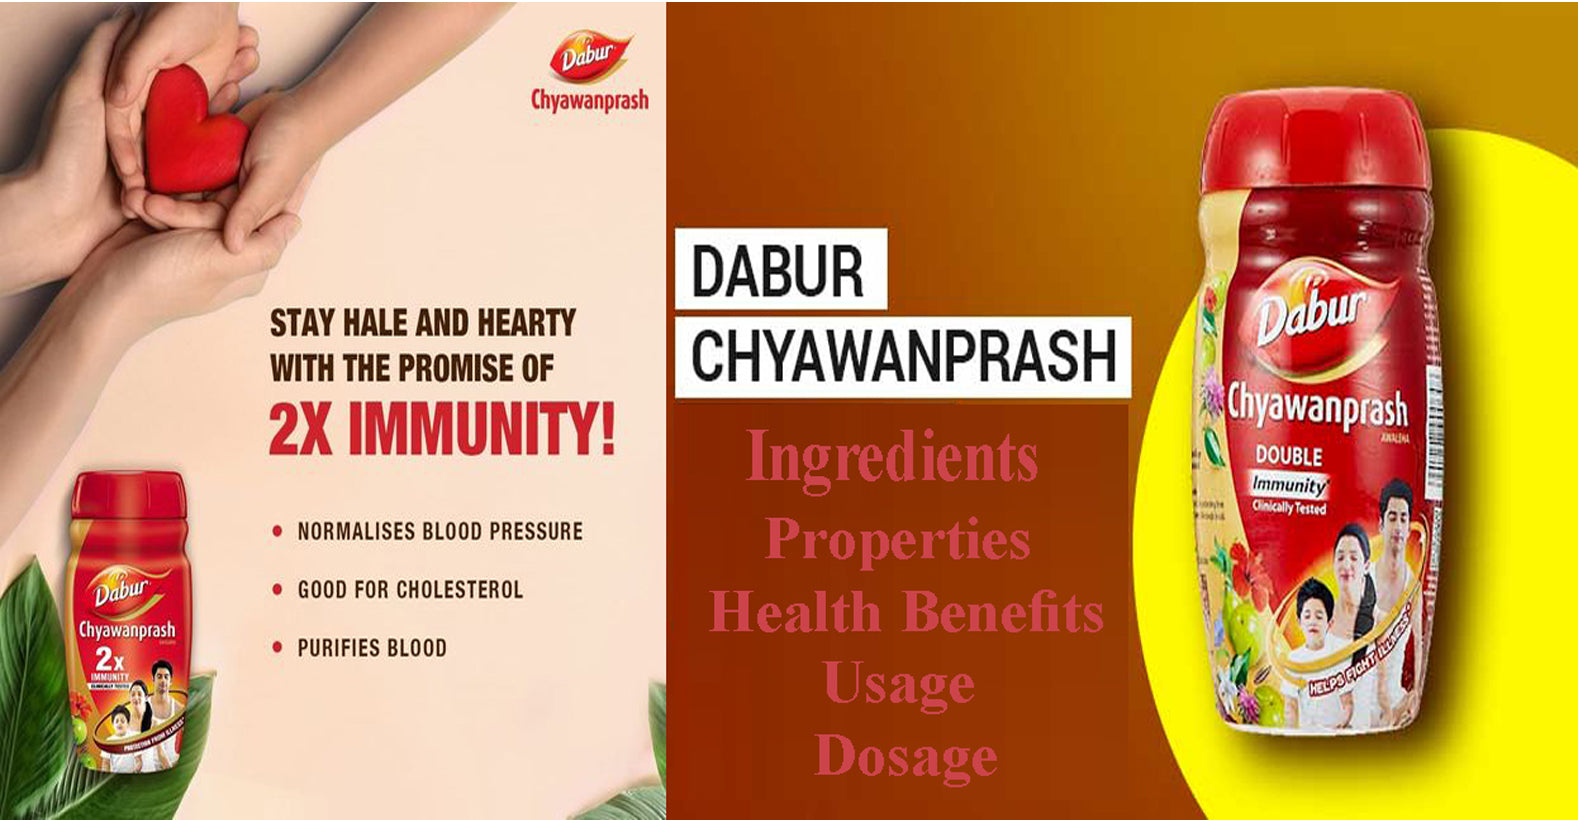 Dabur Chyawanprash – Ingredients, Properties, Health Benefits, Usage, Dosage, Tips